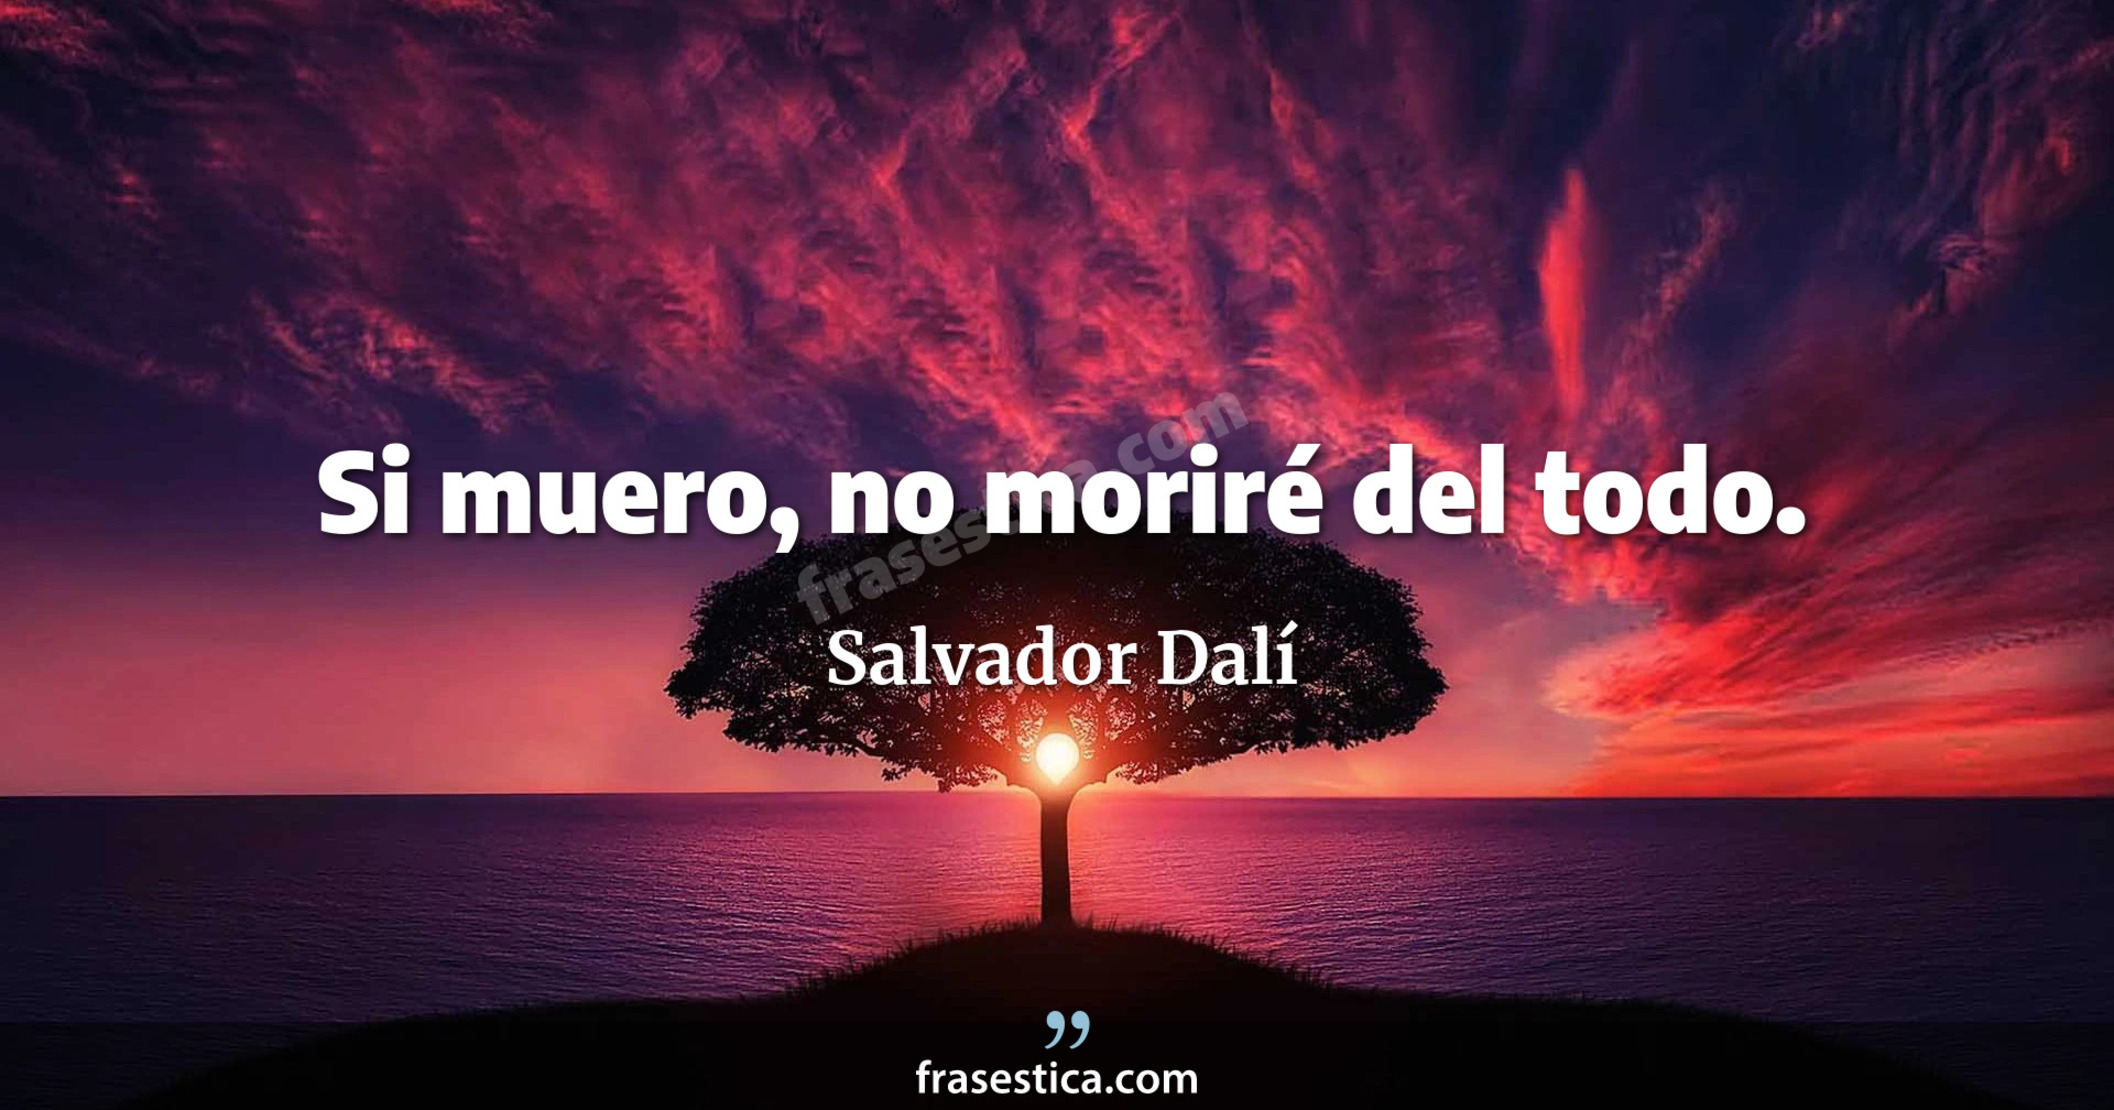 Si muero, no moriré del todo. - Salvador Dalí